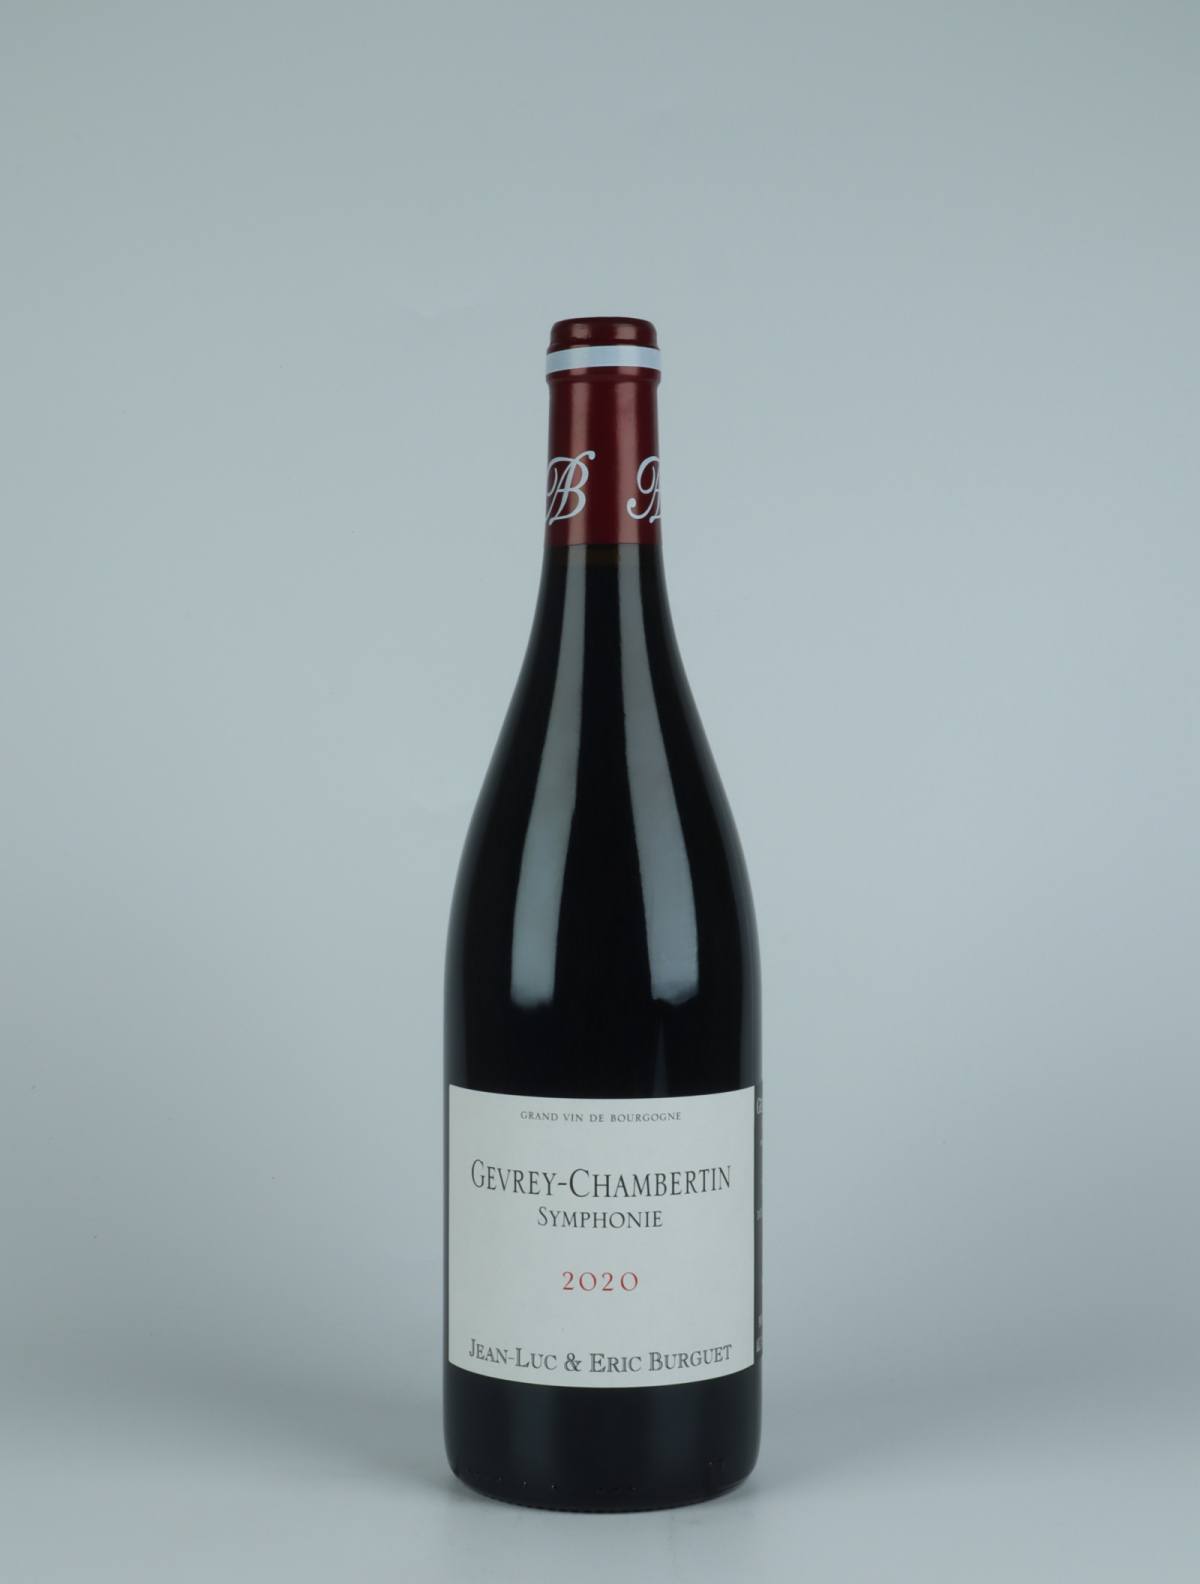 En flaske 2020 Gevrey-Chambertin - Symphonie Rødvin fra Jean-Luc & Eric Burguet, Bourgogne i Frankrig